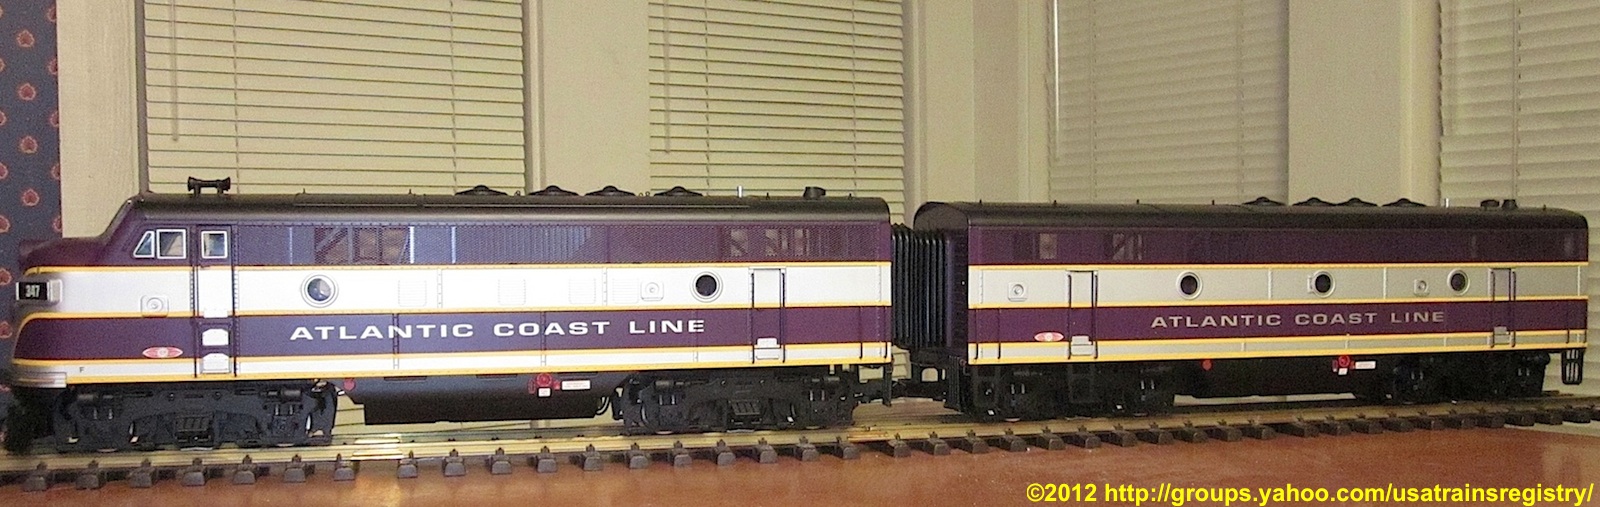 Atlantic Coast Line F3A & B EMD Diesellok (Diesel locomotive) 347